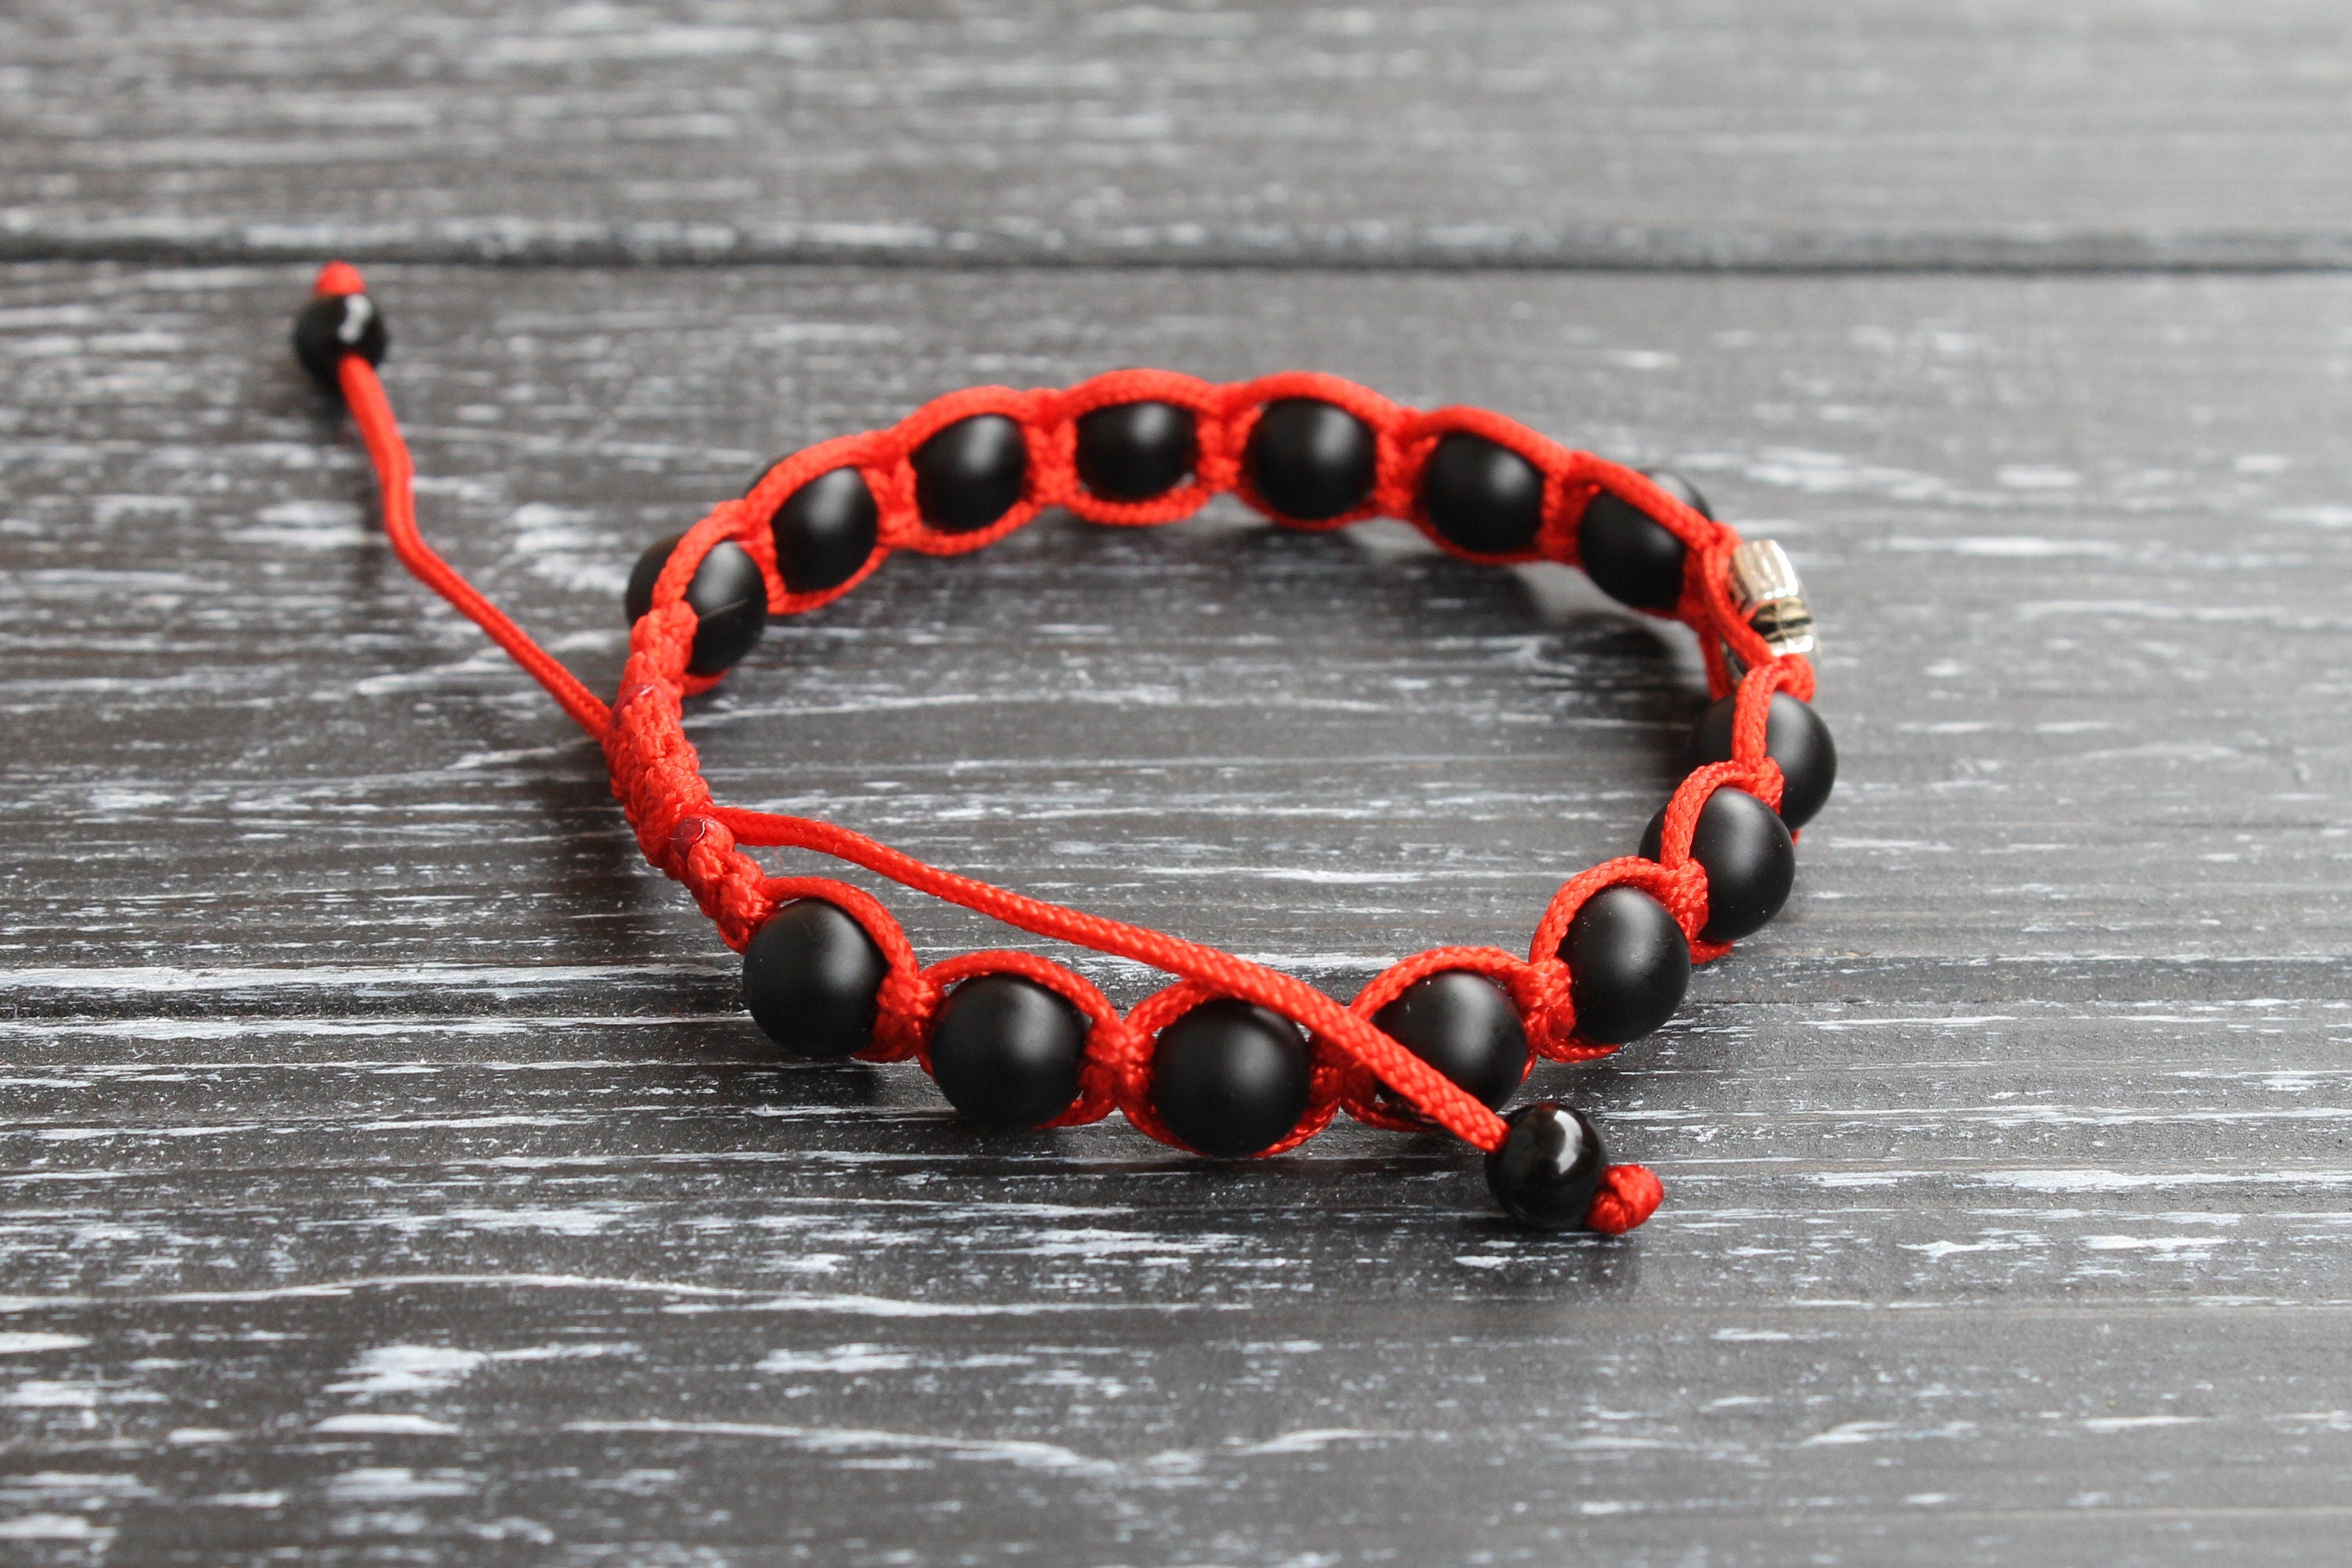 Red Jasper Bracelet 8mm Beads Thread Bracelet